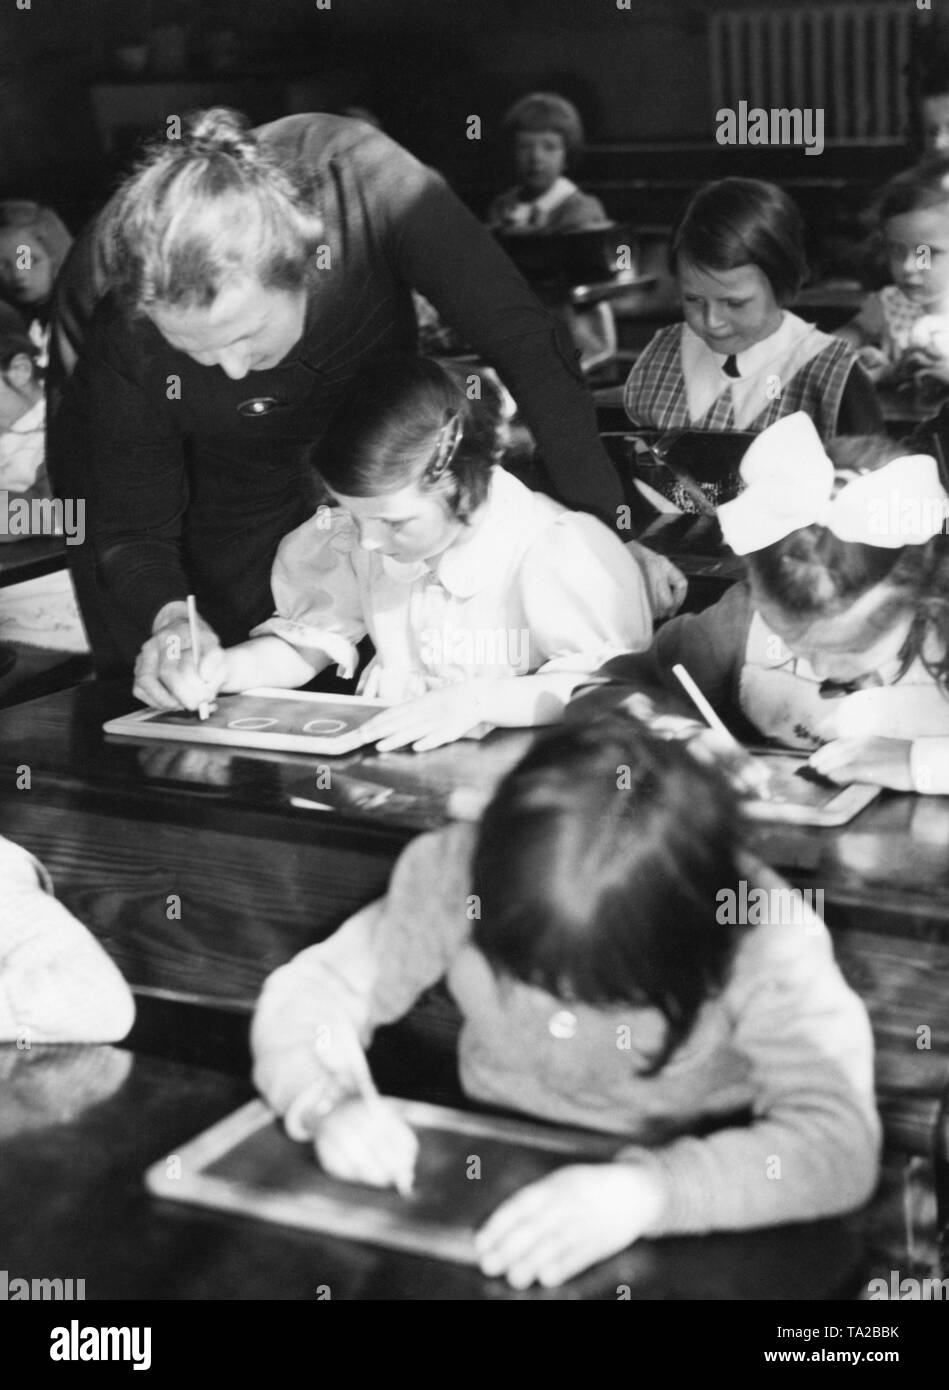 La classe di un GIR'ls classe siedono nei banchi di scuola e di scrivere con il gesso sulle loro schede di scrittura. Un insegnante è aiutare una delle ragazze. Foto Stock